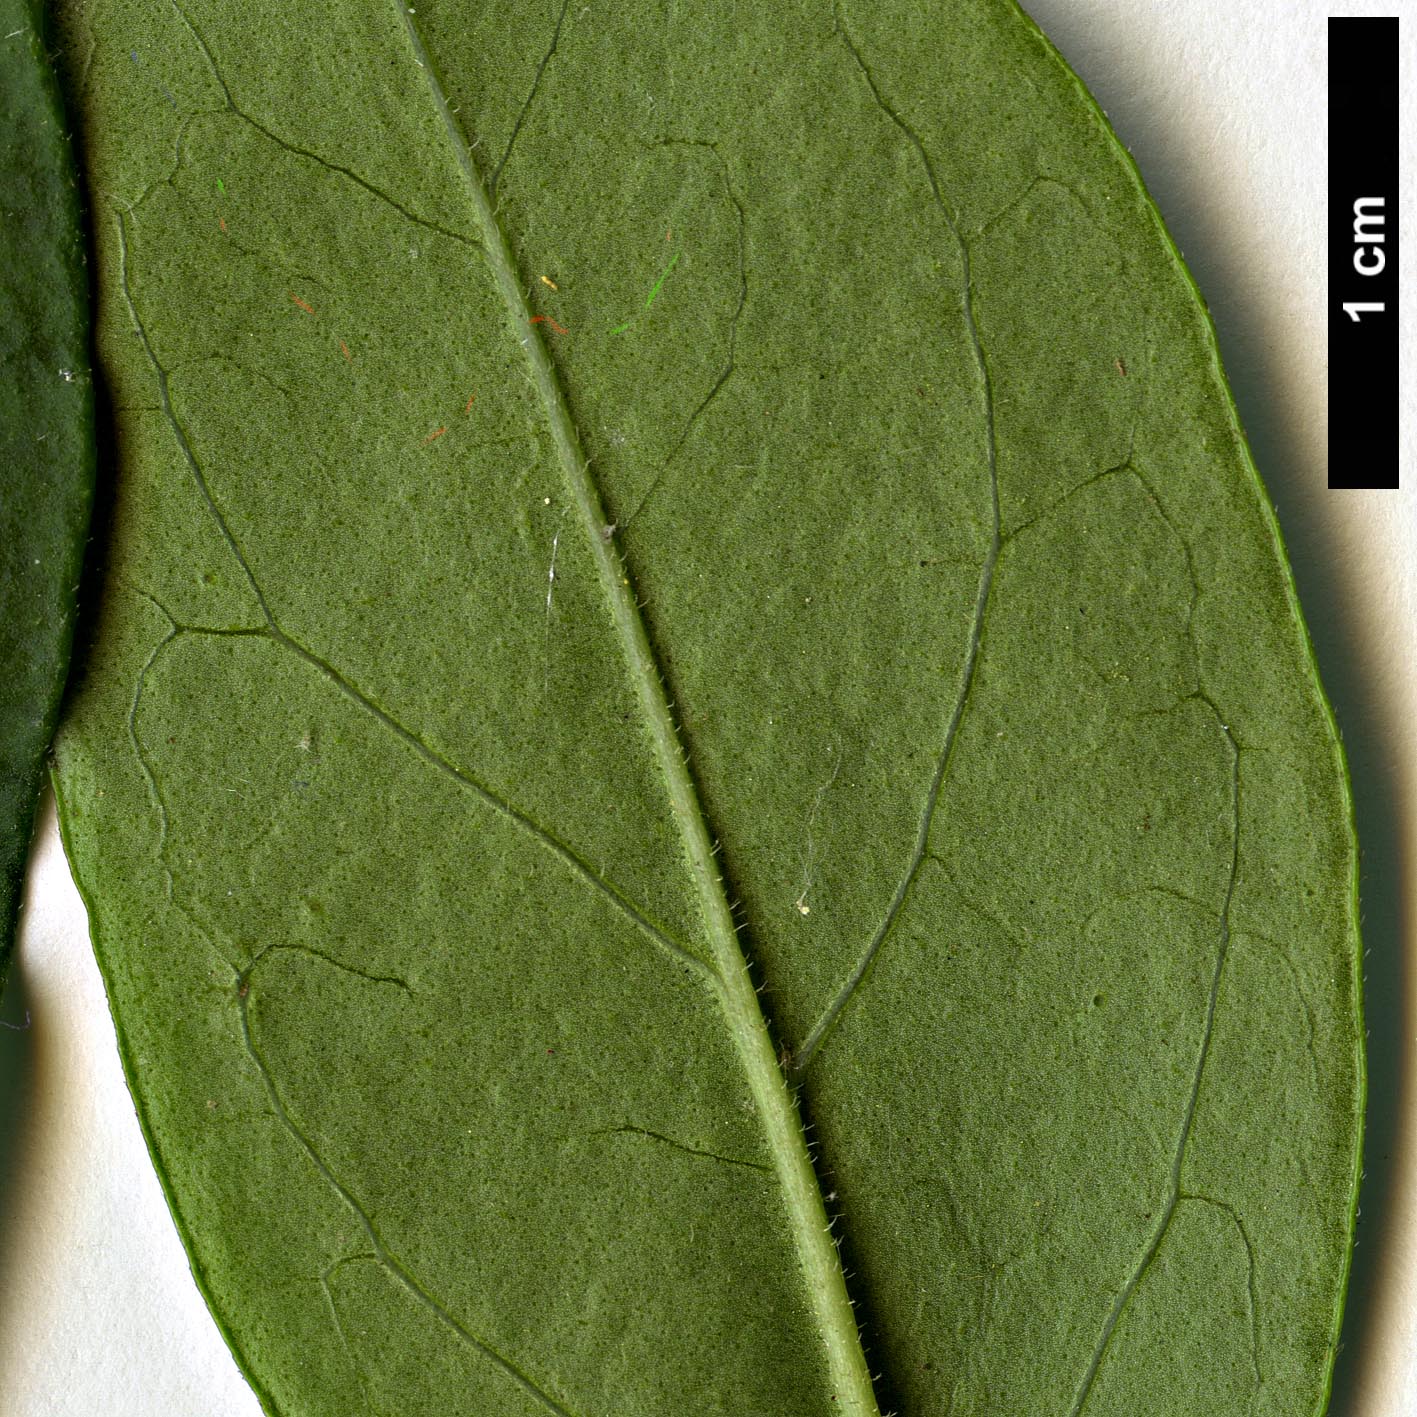 High resolution image: Family: Oleaceae - Genus: Ligustrum - Taxon: ×ibolium (L.obtusifolium × L.ovalifolium)